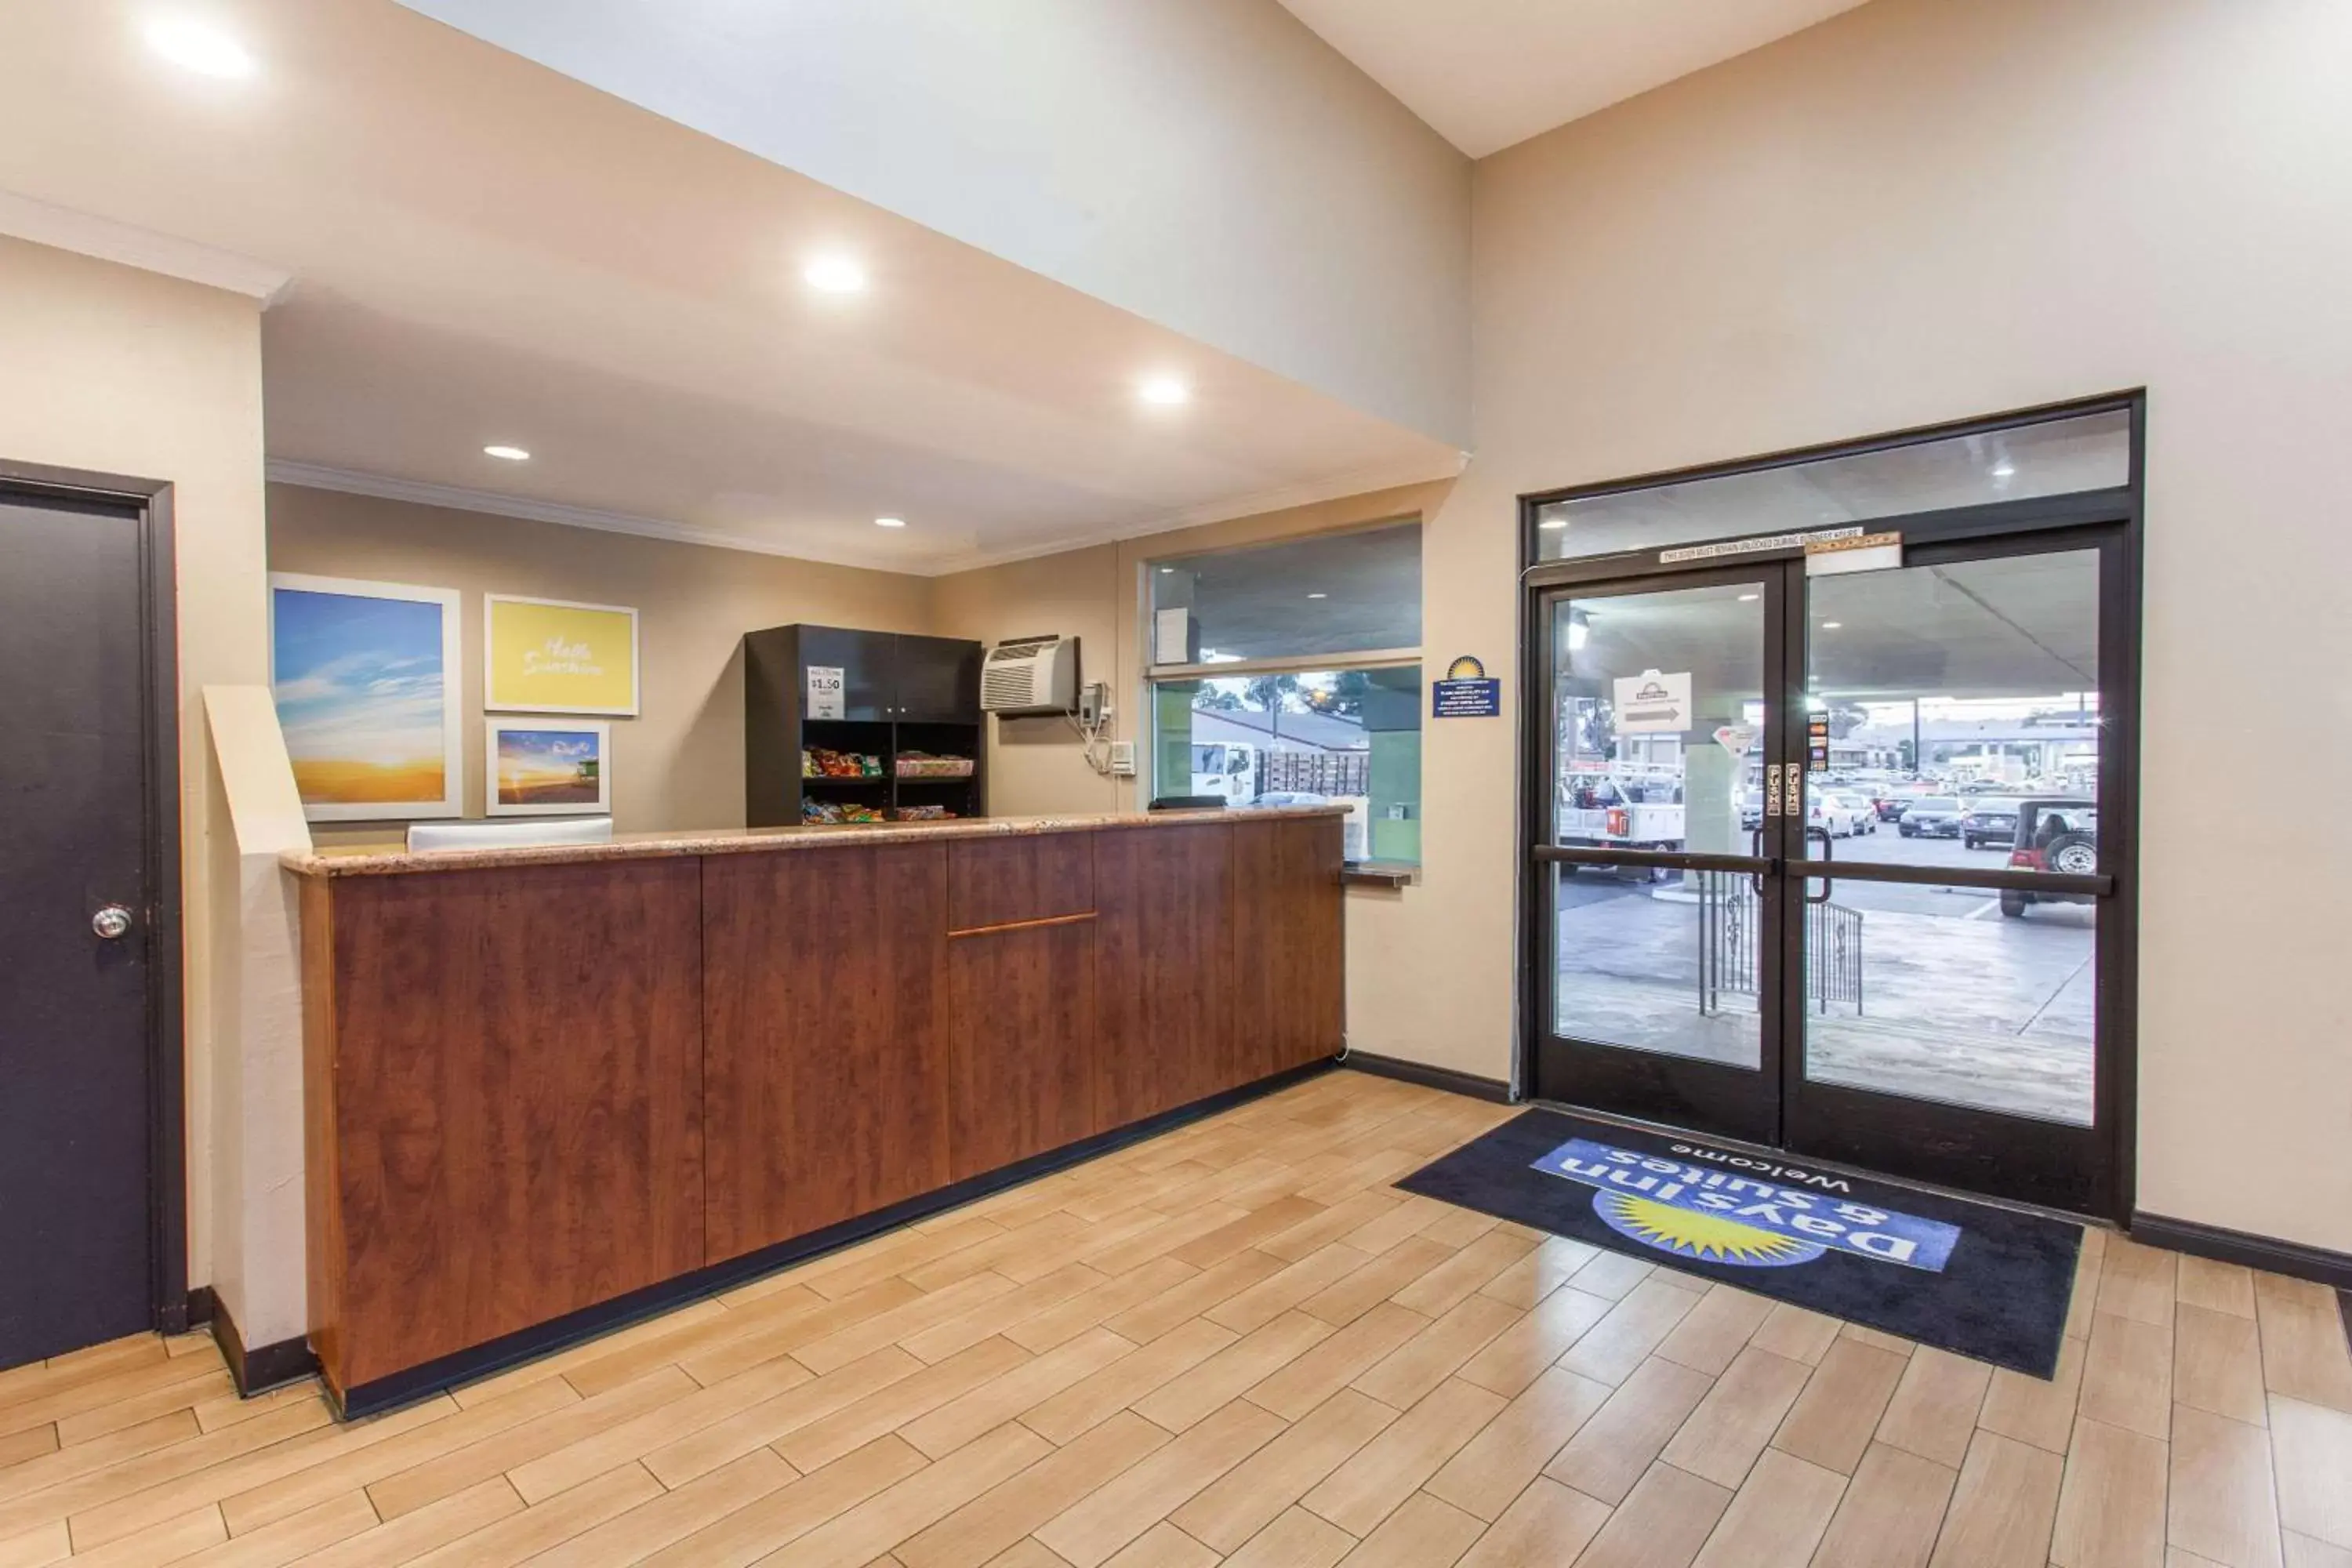 Lobby or reception, Lobby/Reception in Days Inn by Wyndham San Diego-East/El Cajon